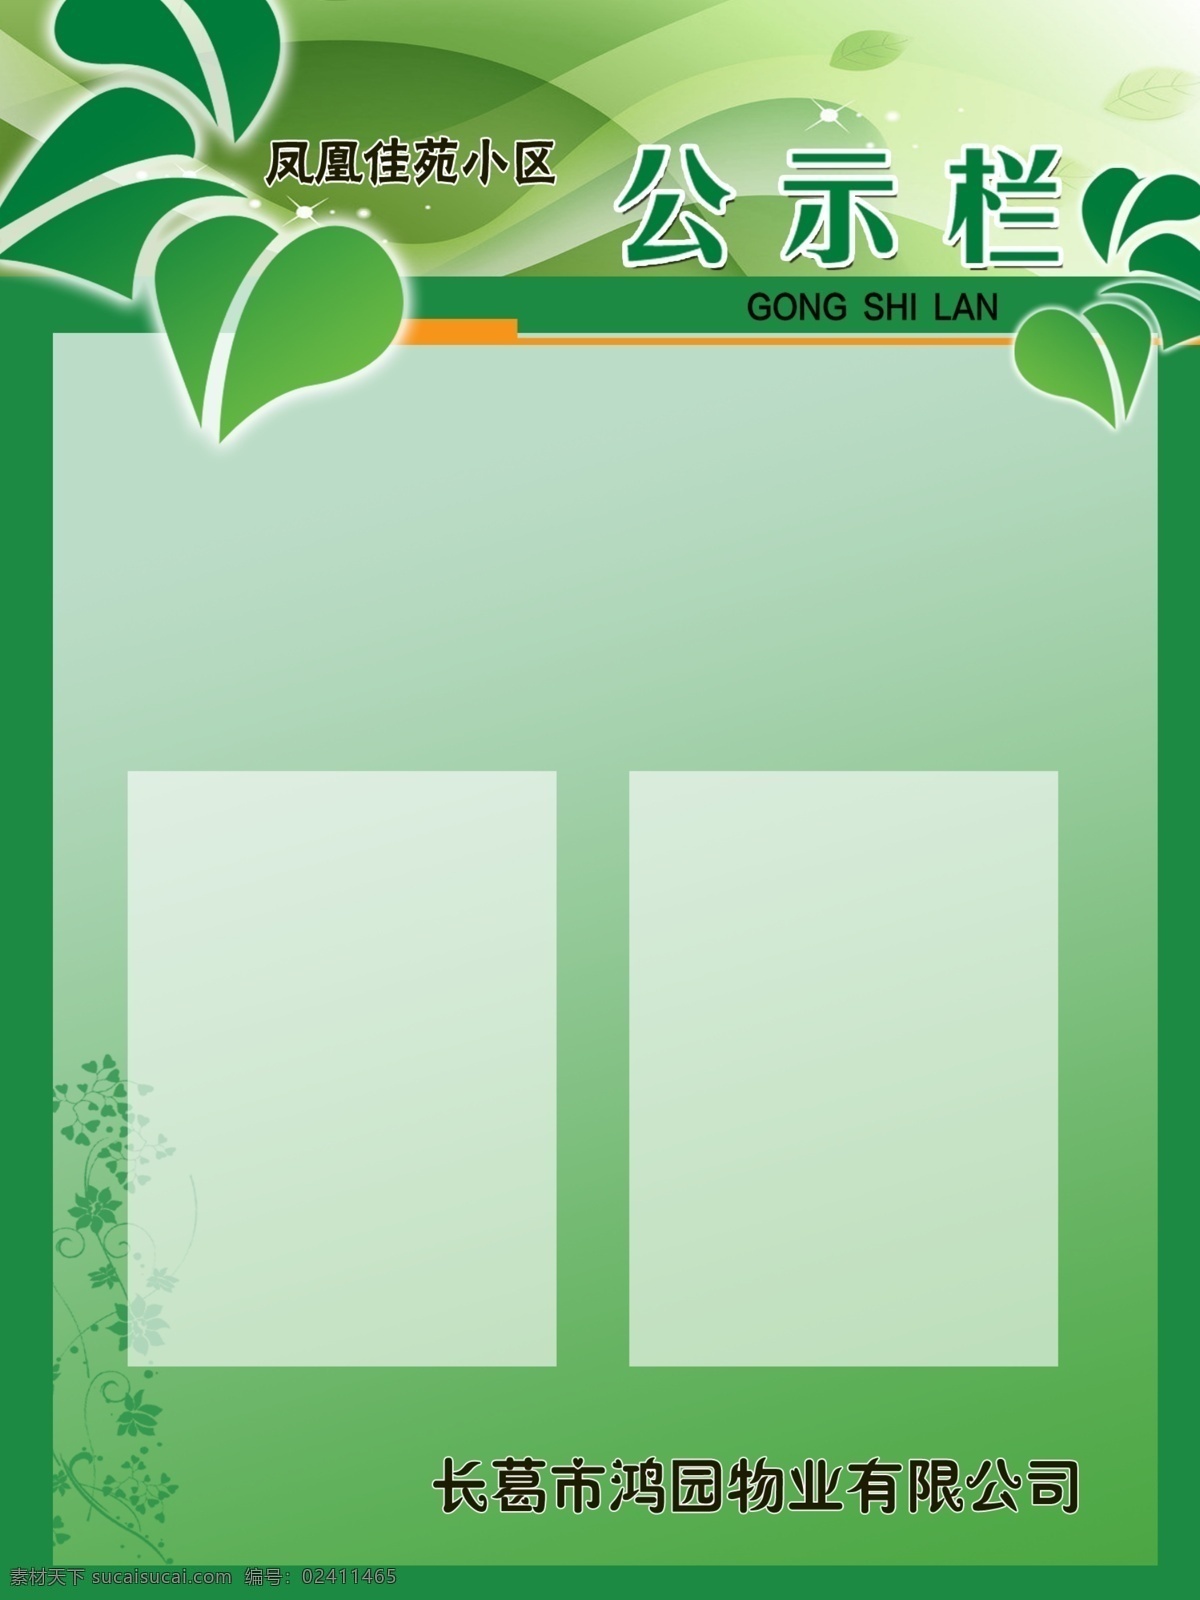 小区公示栏 小区 公示栏 物业 绿色背景 透明框